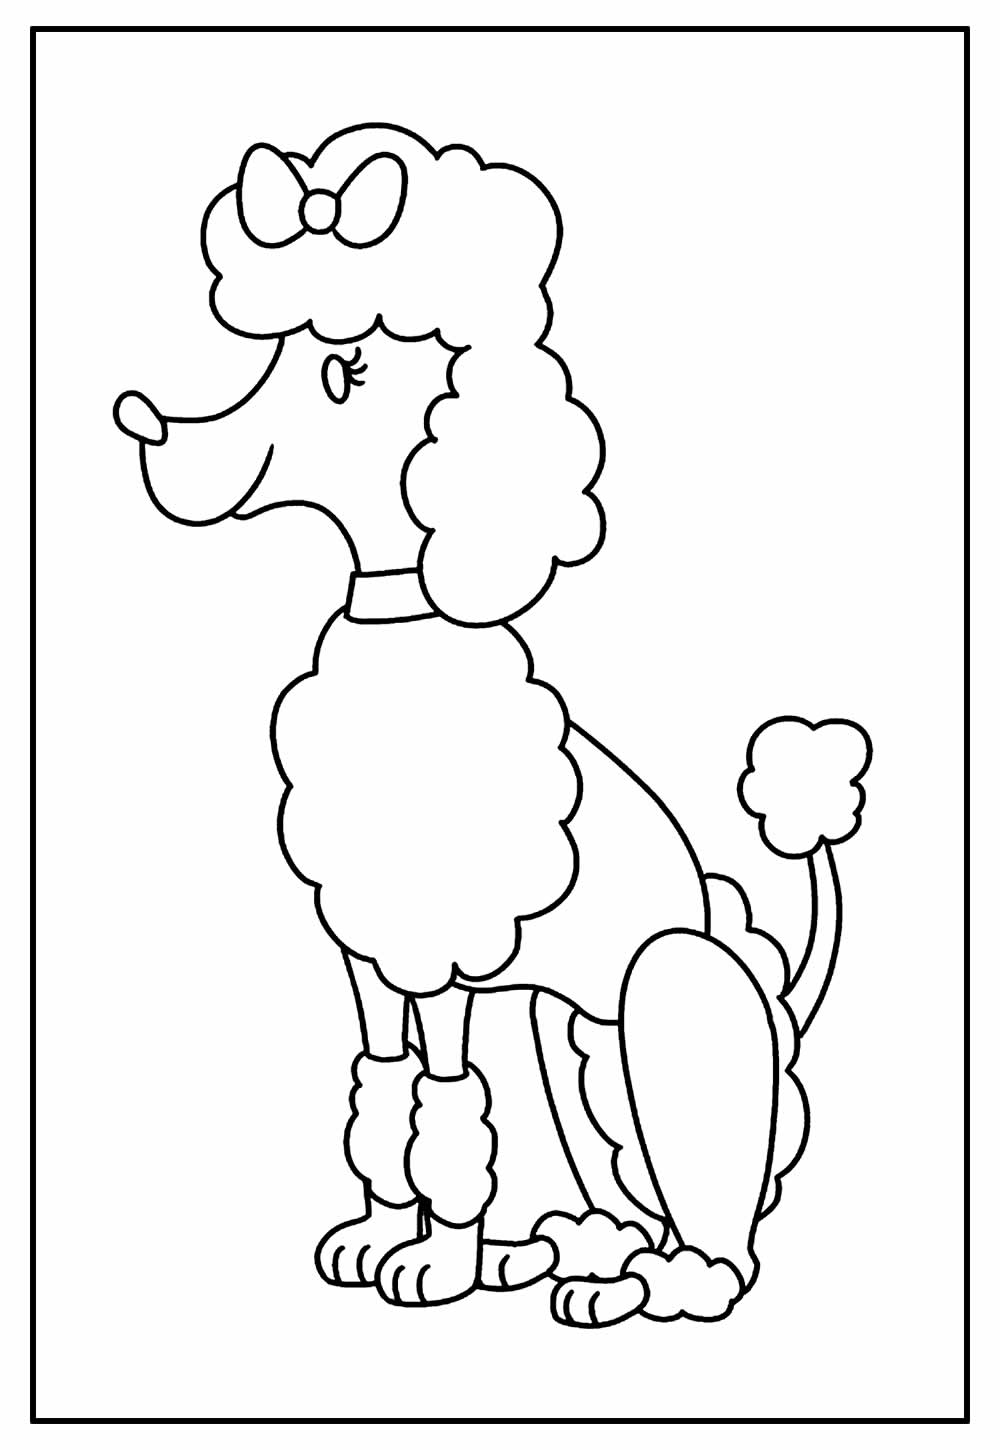 desenho de cachorro poodle para colorir. ilustração vetorial de contorno  7534268 Vetor no Vecteezy